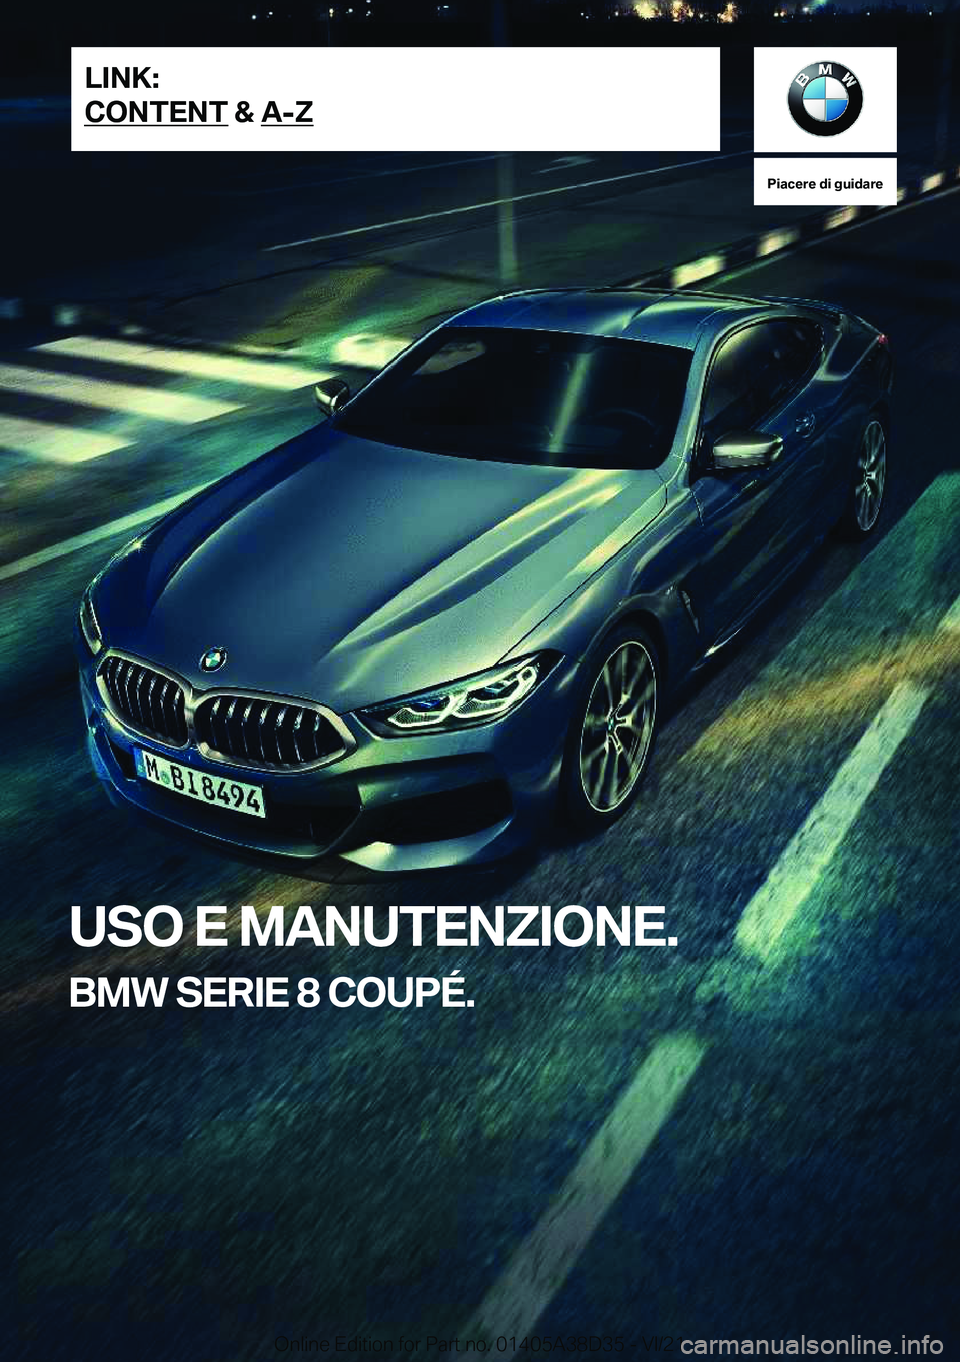 BMW 8 SERIES 2022  Libretti Di Uso E manutenzione (in Italian) �P�i�a�c�e�r�e��d�i��g�u�i�d�a�r�e
�U�S�O��E��M�A�N�U�T�E�N�Z�I�O�N�E�.
�B�M�W��S�E�R�I�E��8��C�O�U�P�